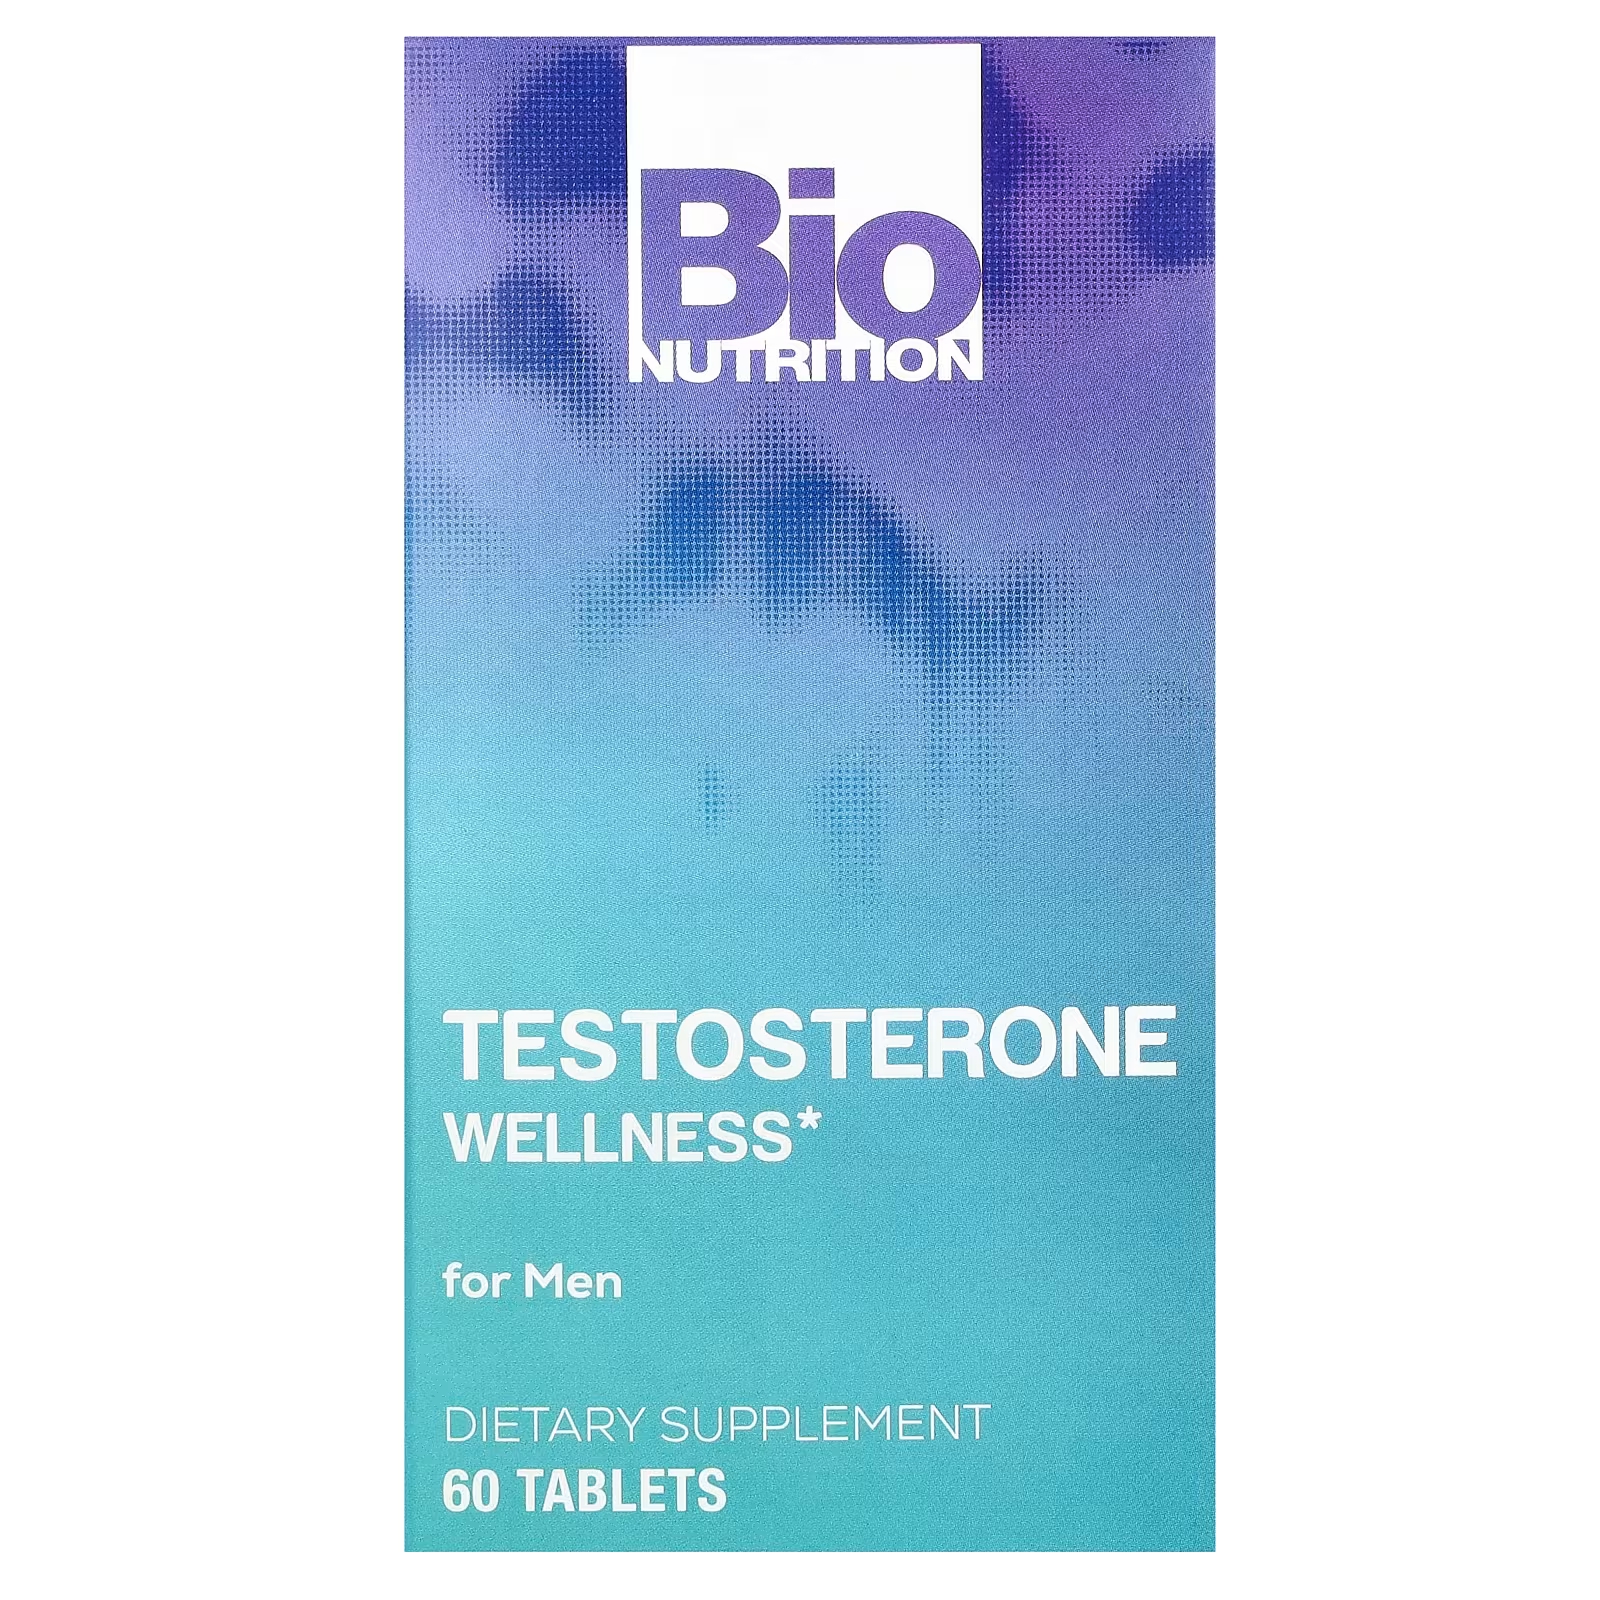 Тестостерон Bio Nutrition для мужчин, 60 таблеток тестостерон тройного действия с максимальной эффективностью 60 таблеток applied nutrition